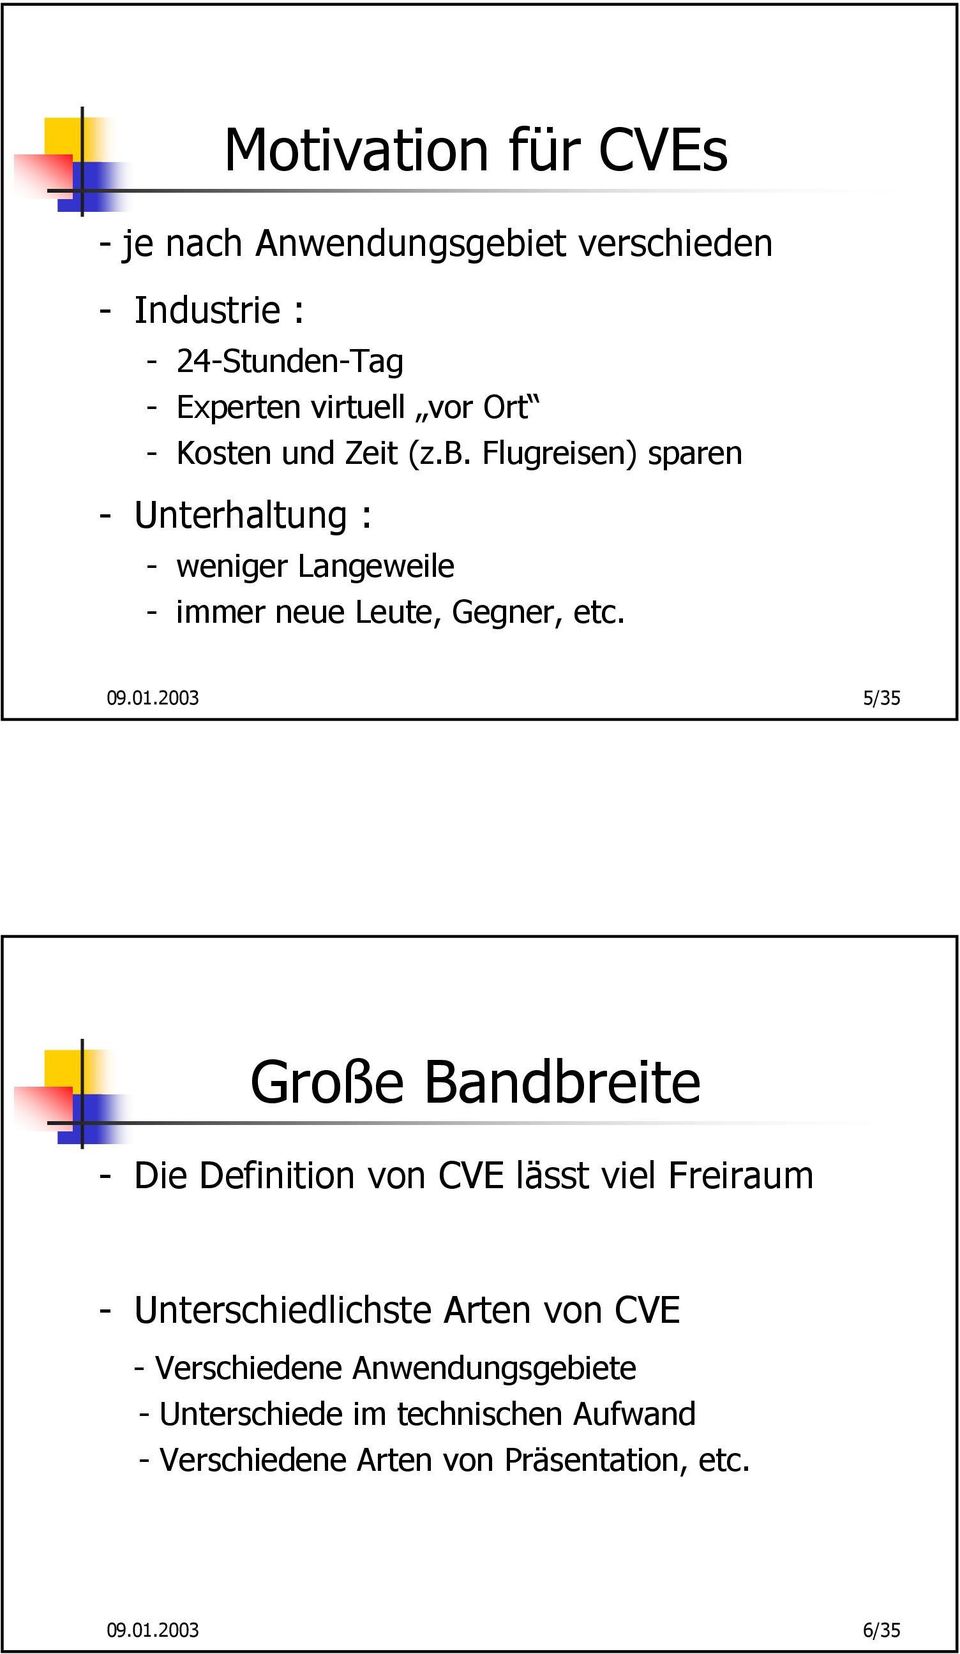 01.2003 5/35 Große Bandbreite - Die Definition von CVE lässt viel Freiraum - Unterschiedlichste Arten von CVE -